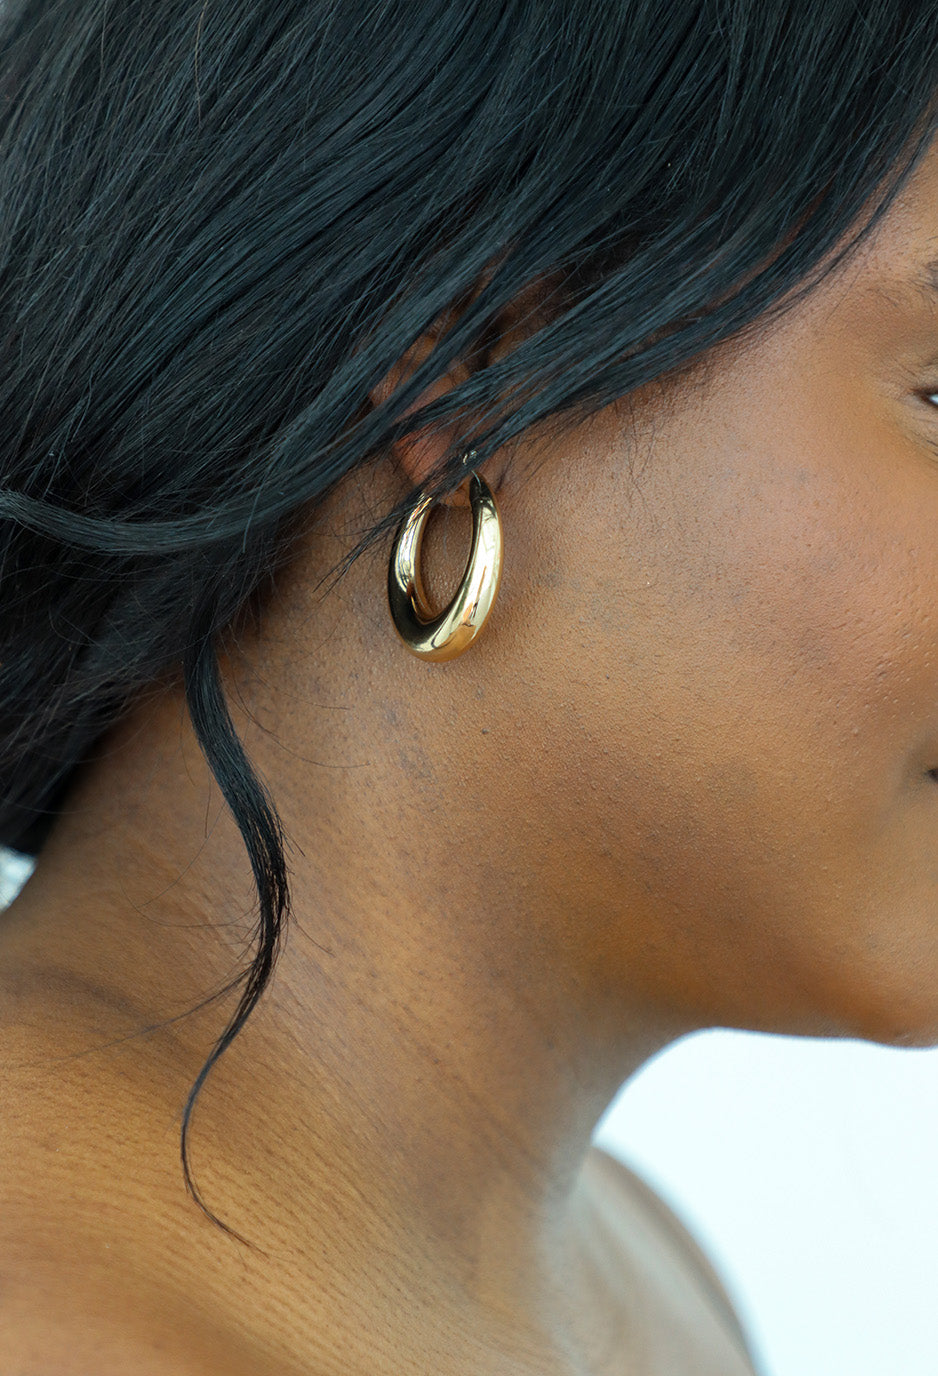 girl wearing gold earrings